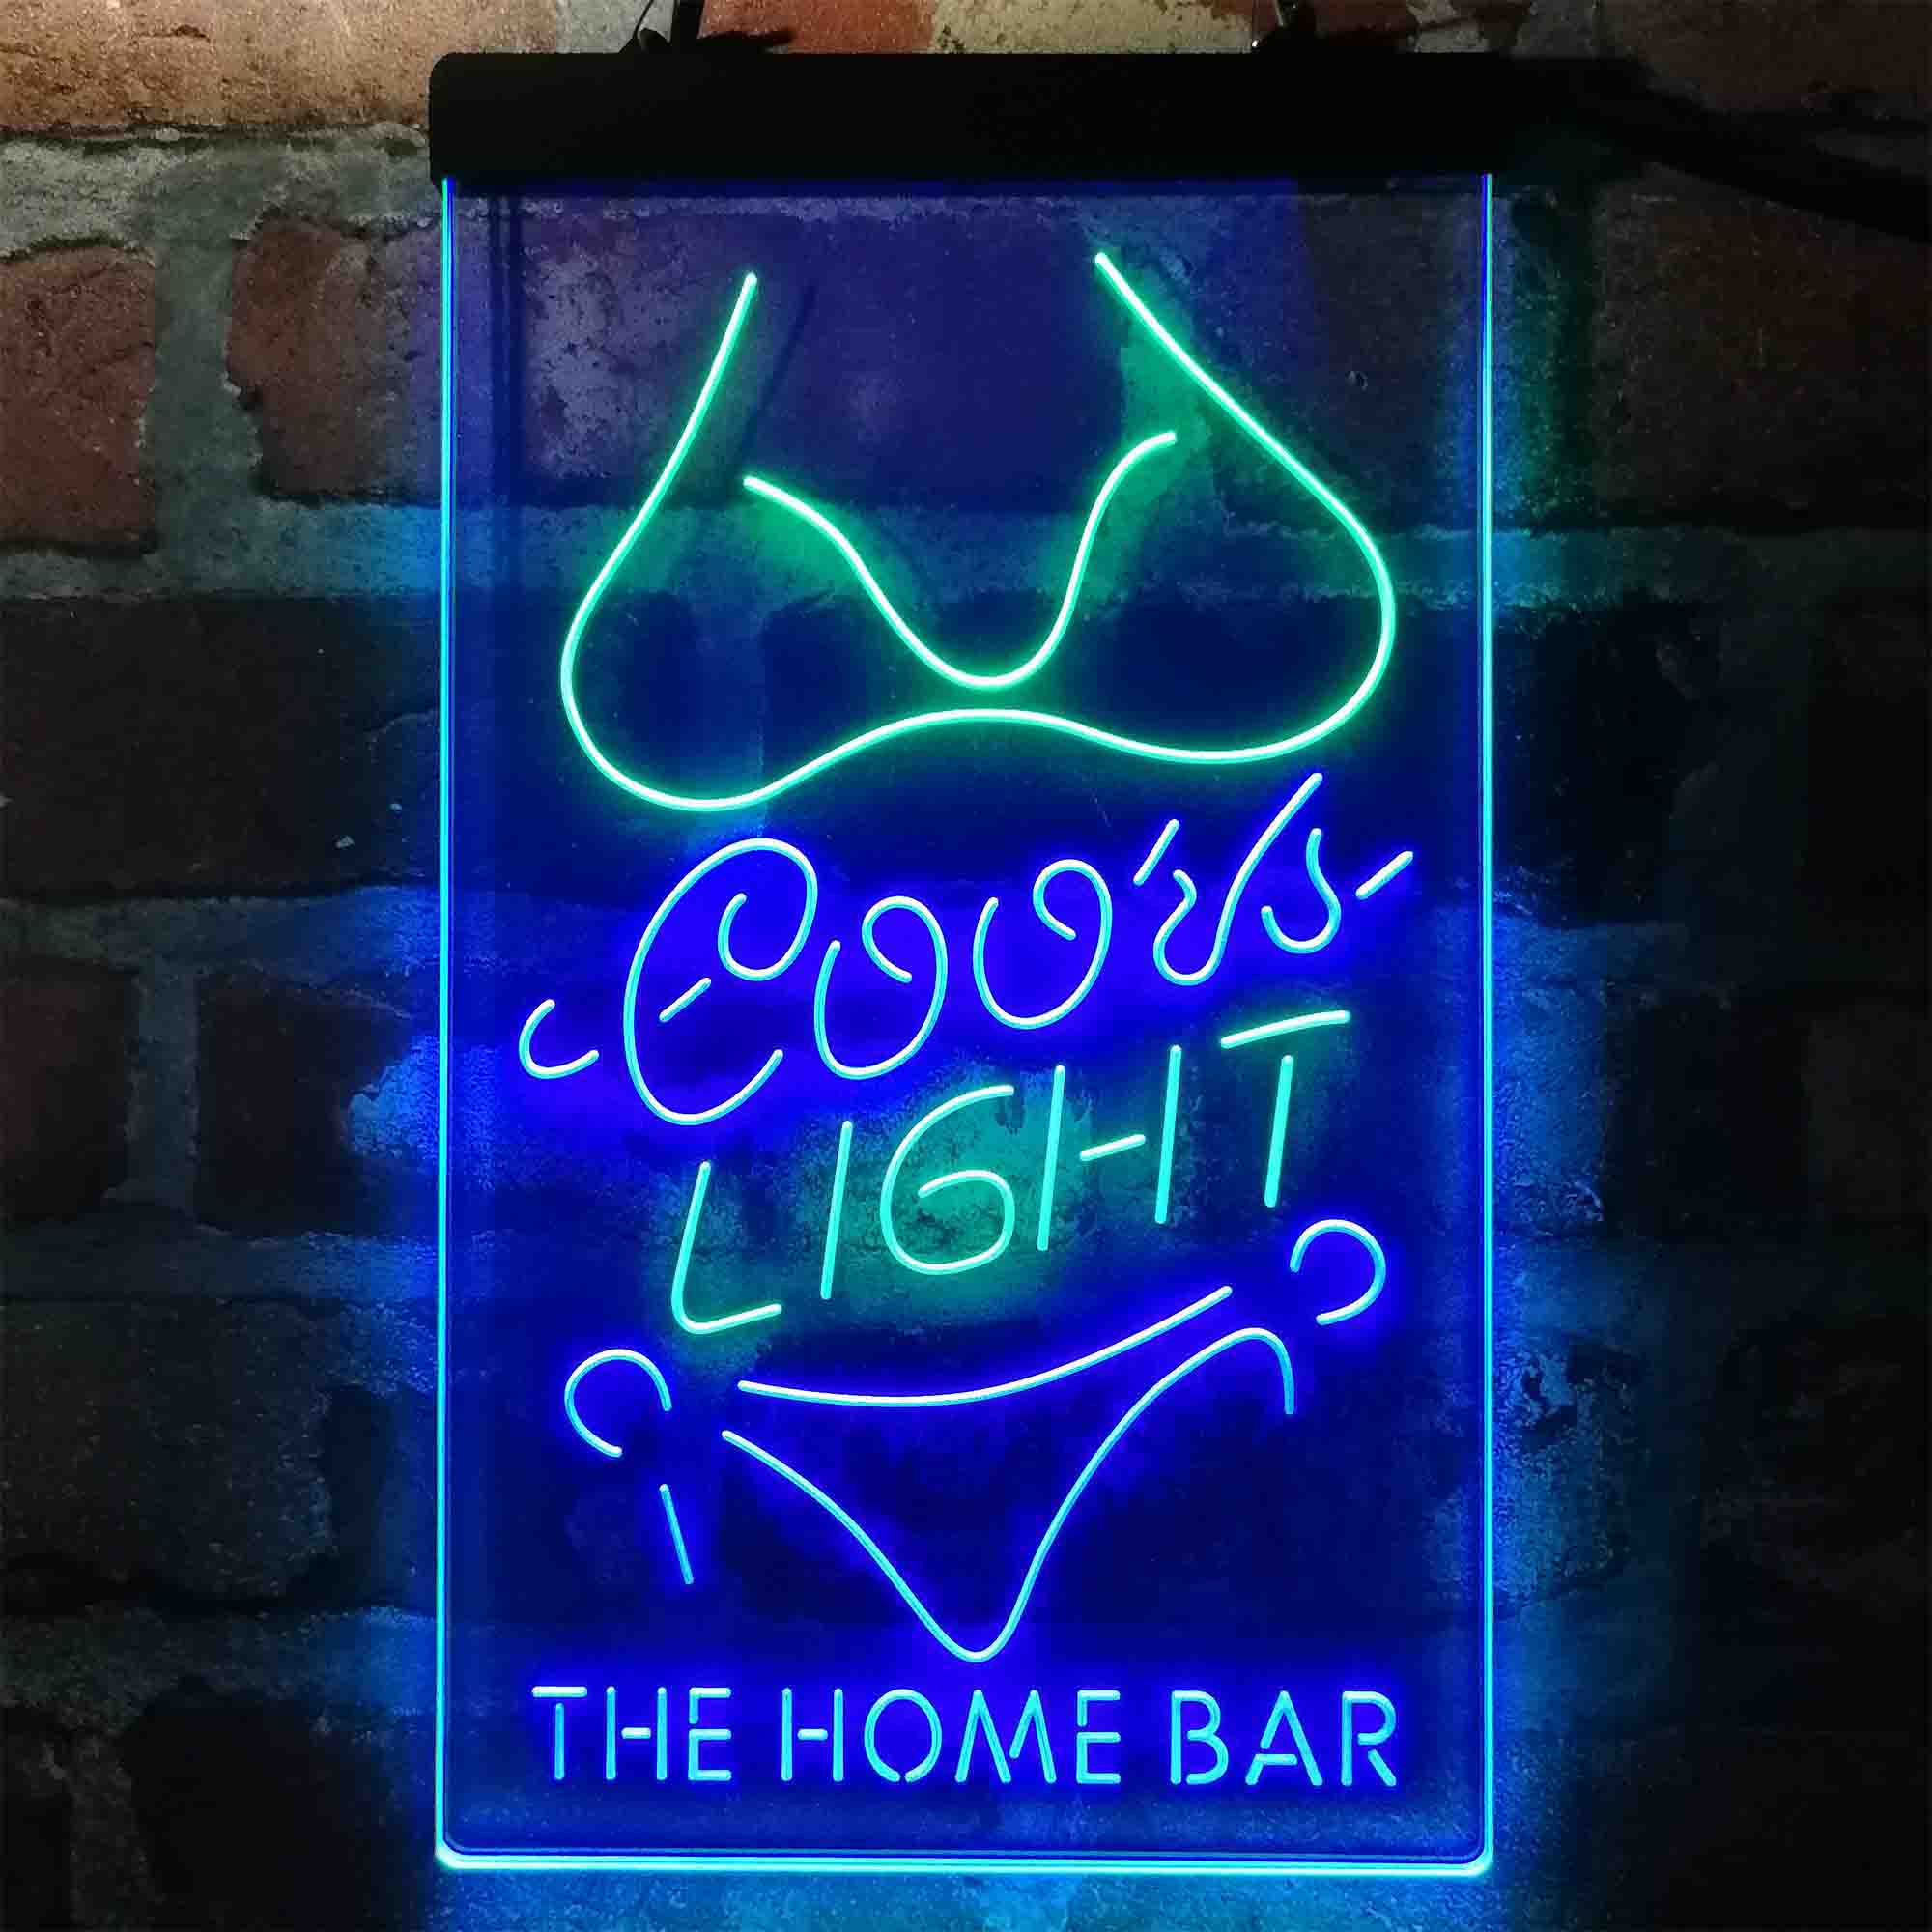 Custom Name Coors Light Girl Home Bar Neon LED Sign